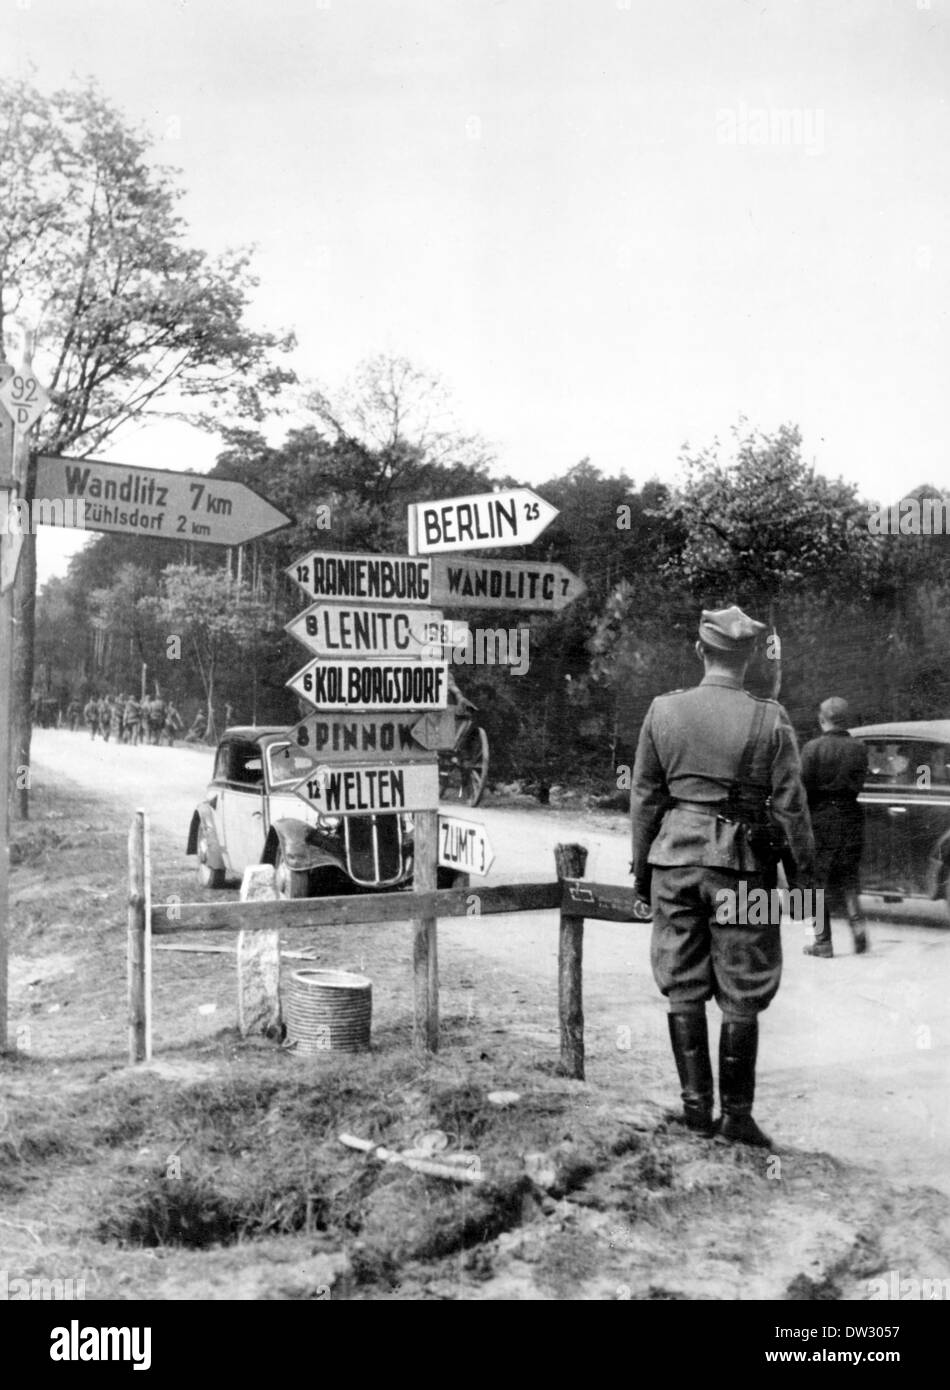 Fine della guerra a Berlino 1945 - i soldati polacchi e sovietici si trovano di fronte alle indicazioni che indicano la strada per Berlino (25 km), Wandlitz (7 km), Zuehlsdorf (2 km), Oranienburg (12 km), Lenitc (Lehnitz, 8 km), Borgsdorf (6 km), Pinnow (8 km), Welten (Velten, 12 km) e Zumt (Summt 3 km). Fotoarchiv für Zeitgeschichtee - NESSUN SERVIZIO DI CABLAGGIO Foto Stock